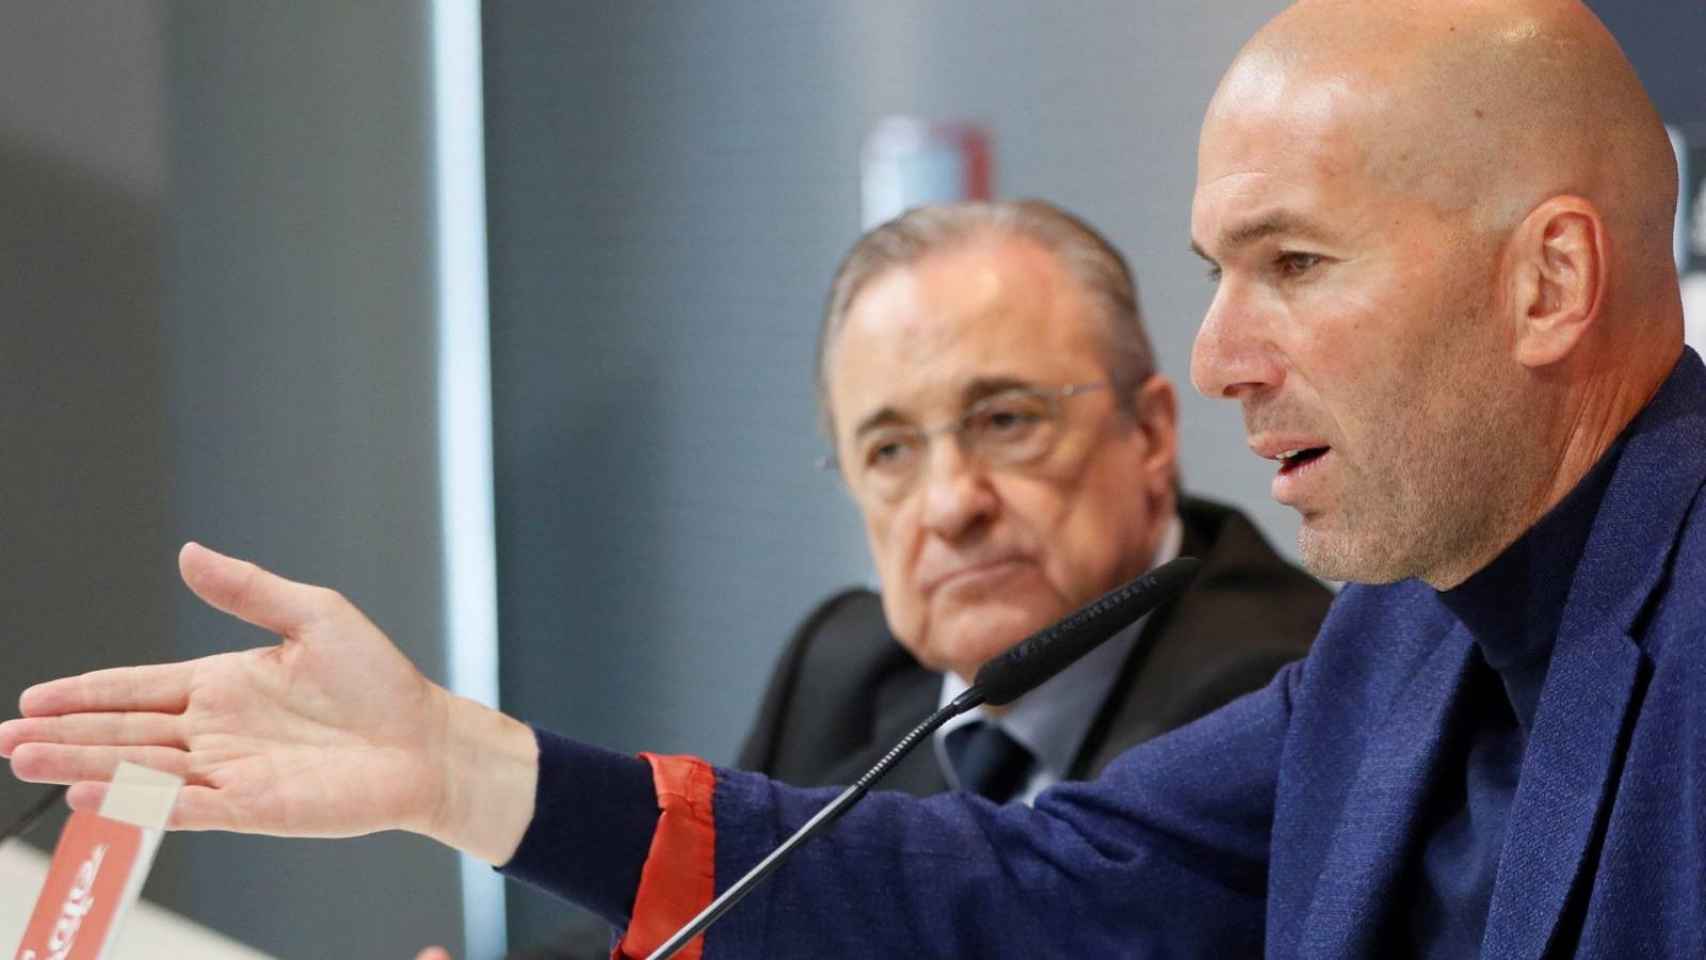 Zinedine Zidane en la rueda de prensa de su primera dimisión / EFE